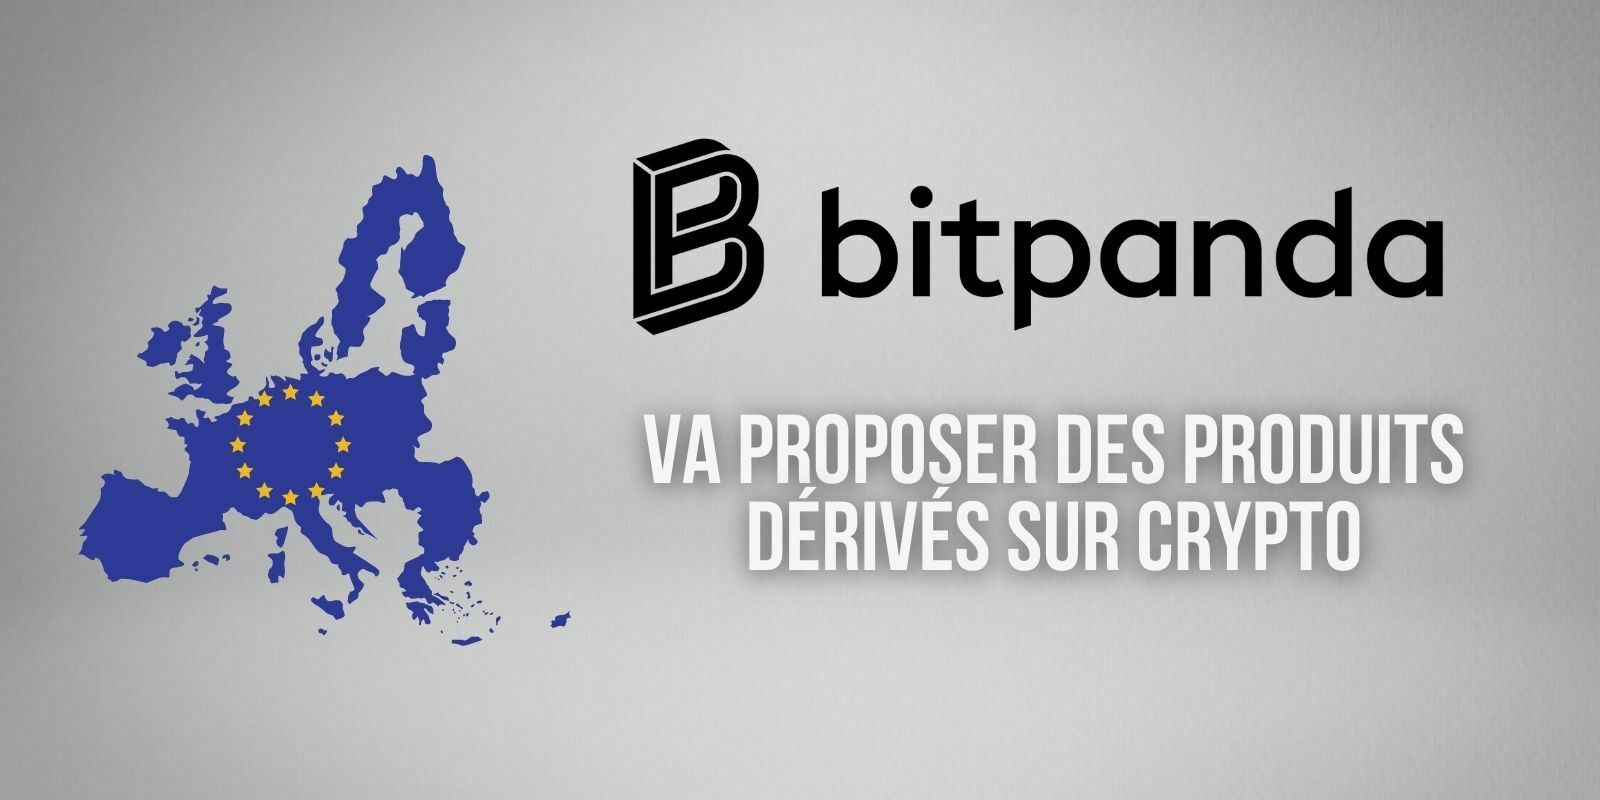 L’exchange européen Bitpanda va proposer des produits dérivés sur cryptomonnaies